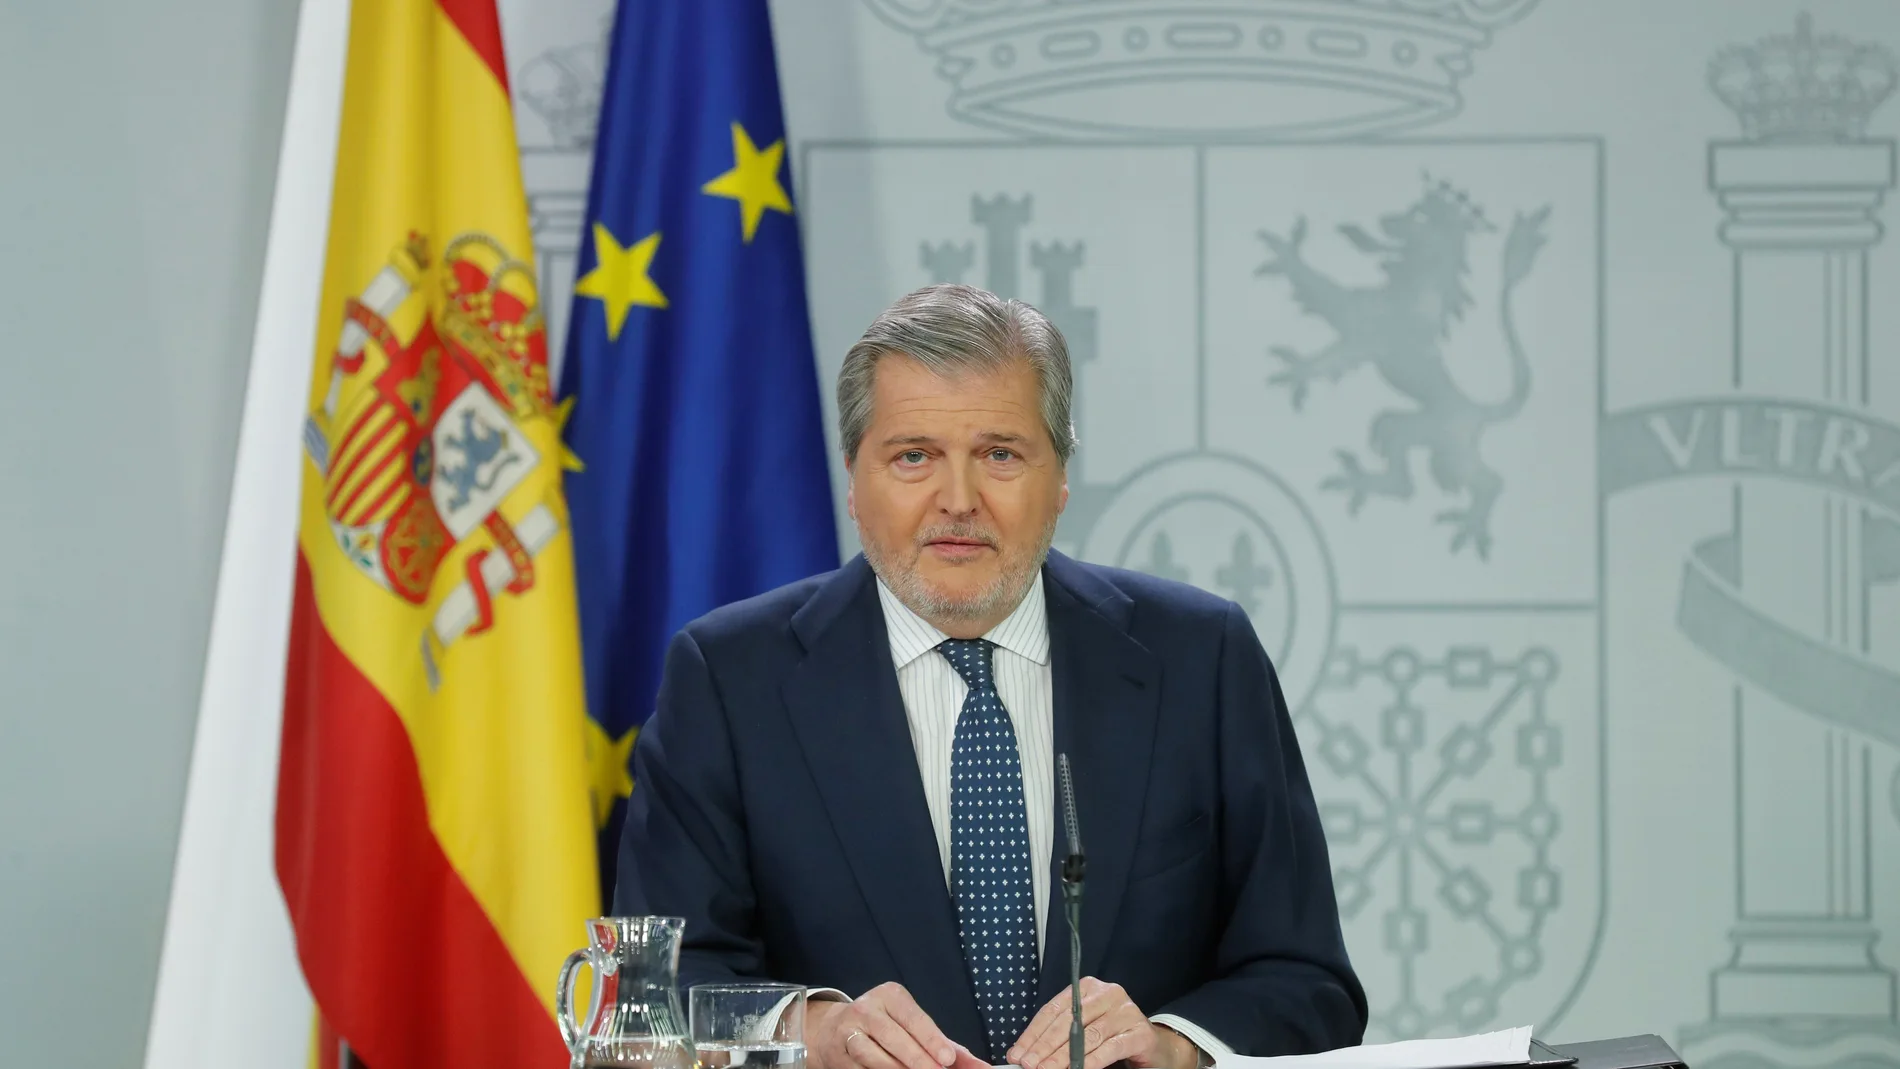 El portavoz del Gobierno, Íñigo Méndez de Vigo